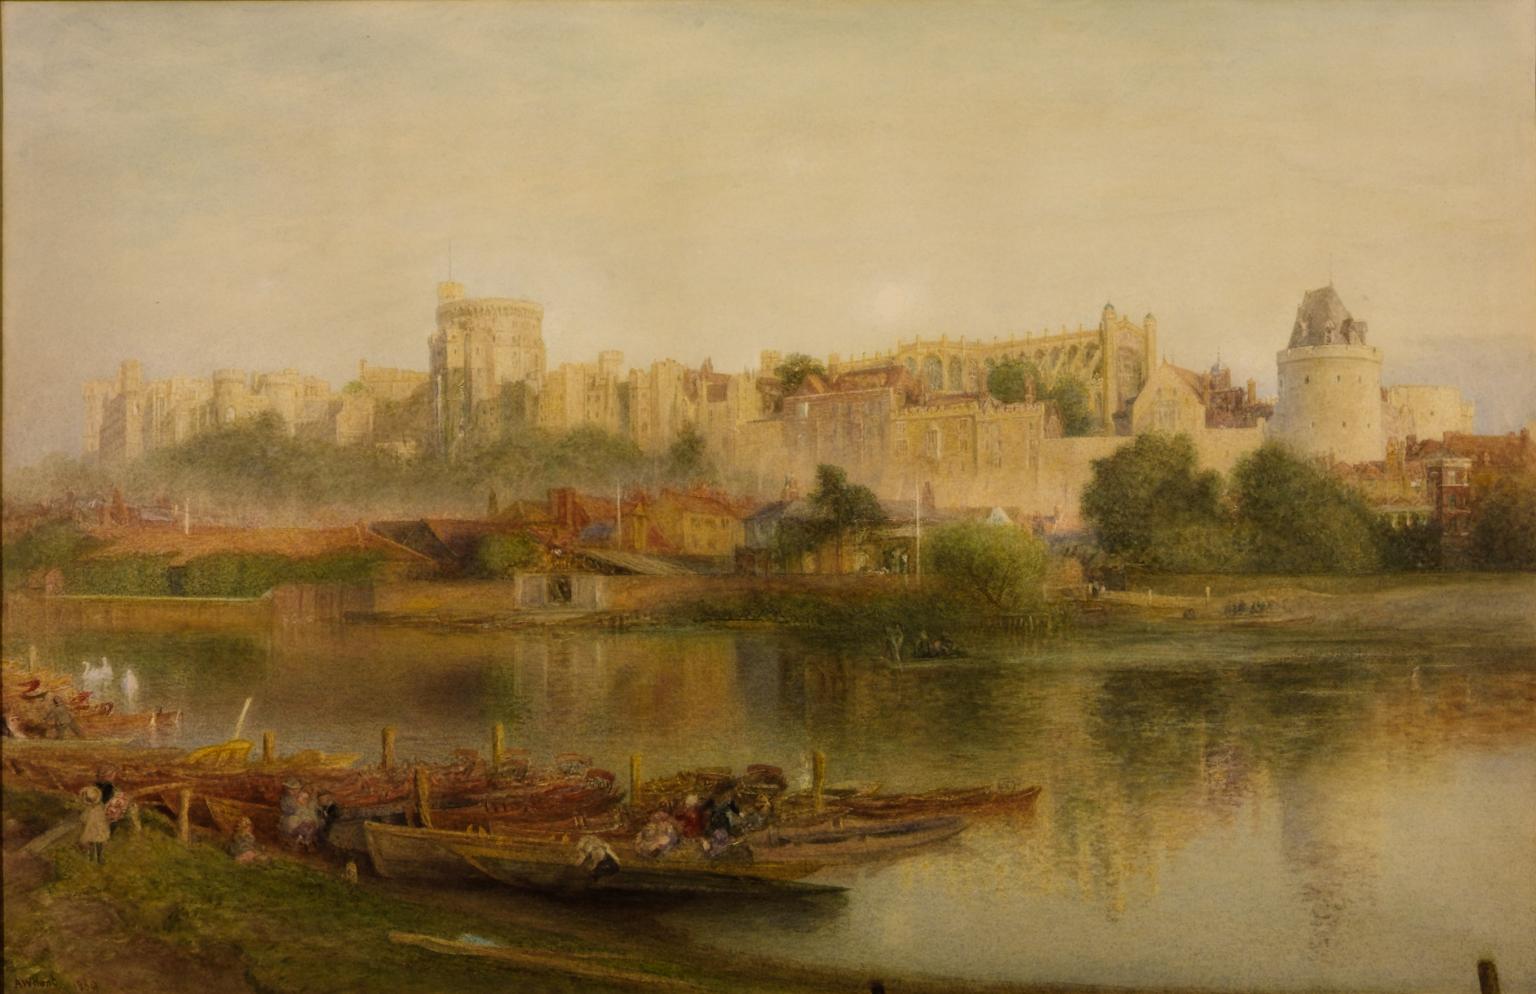 Tranh màu nước lâu đài Windsor bởi tác giả Alfred William Hunt, 1830–1896. (Ảnh: TATE)